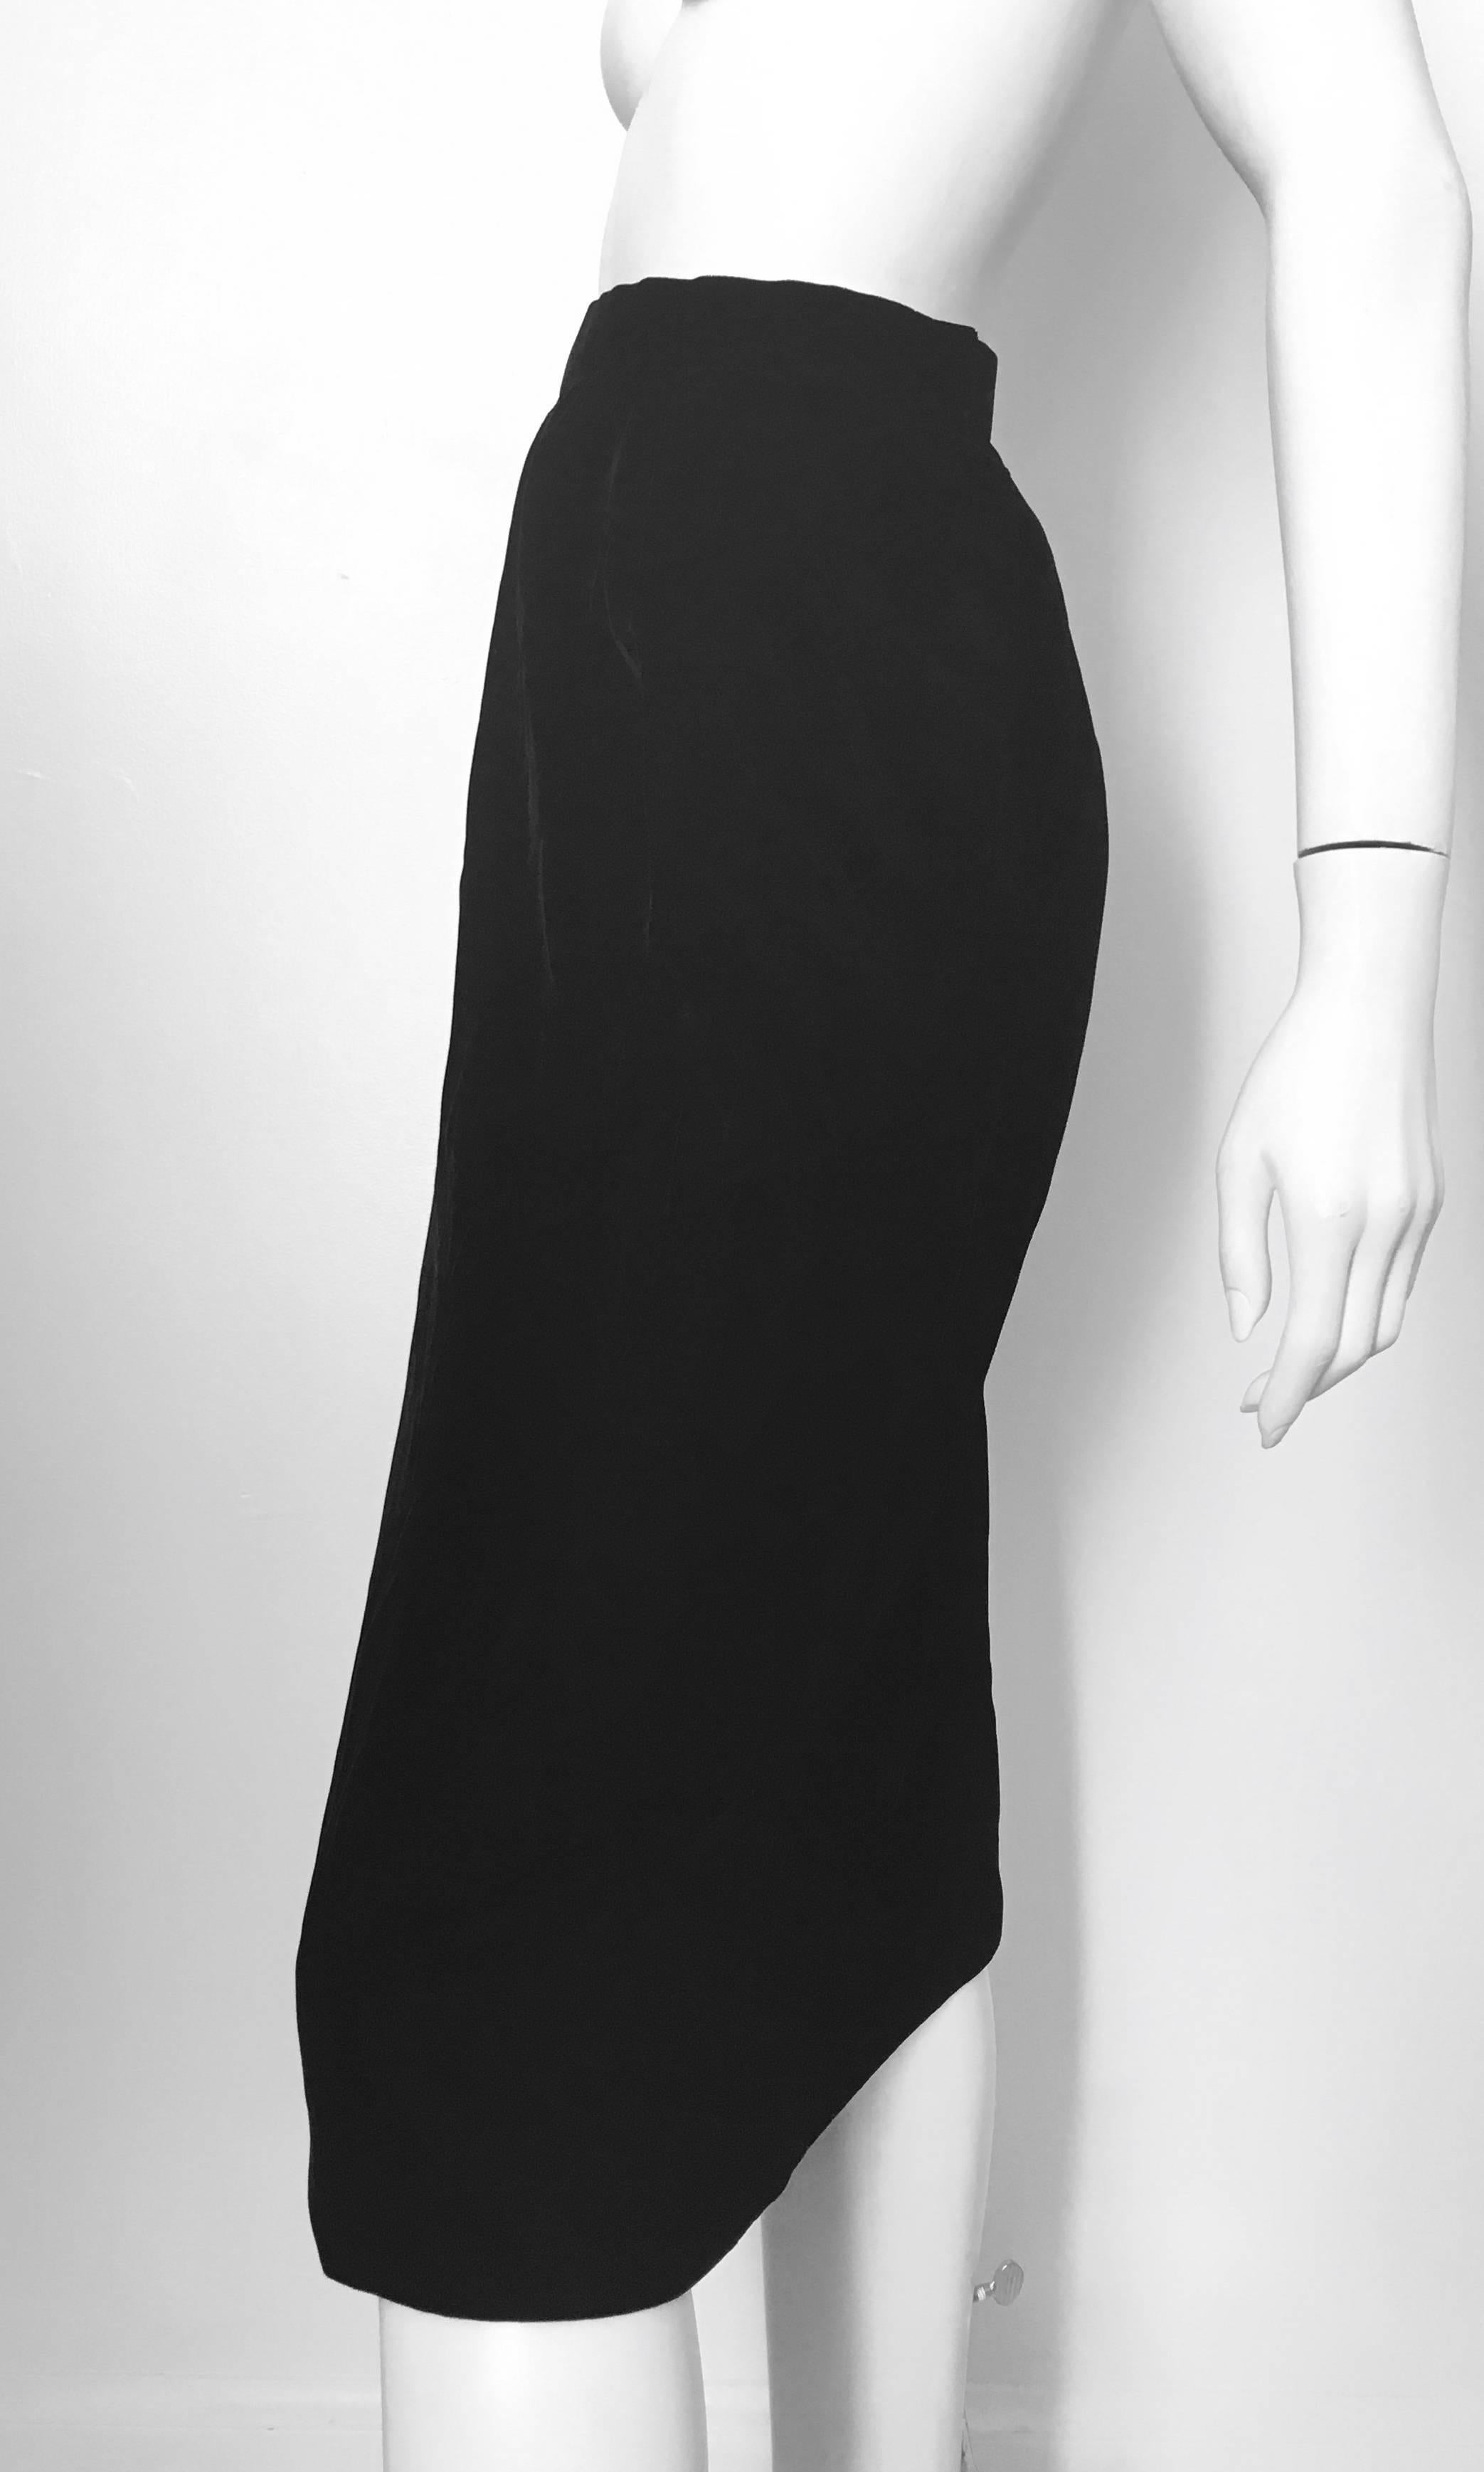 Women's or Men's Oscar de la Renta 1980s Black Velvet Long Skirt Size 6. Never Worn. For Sale